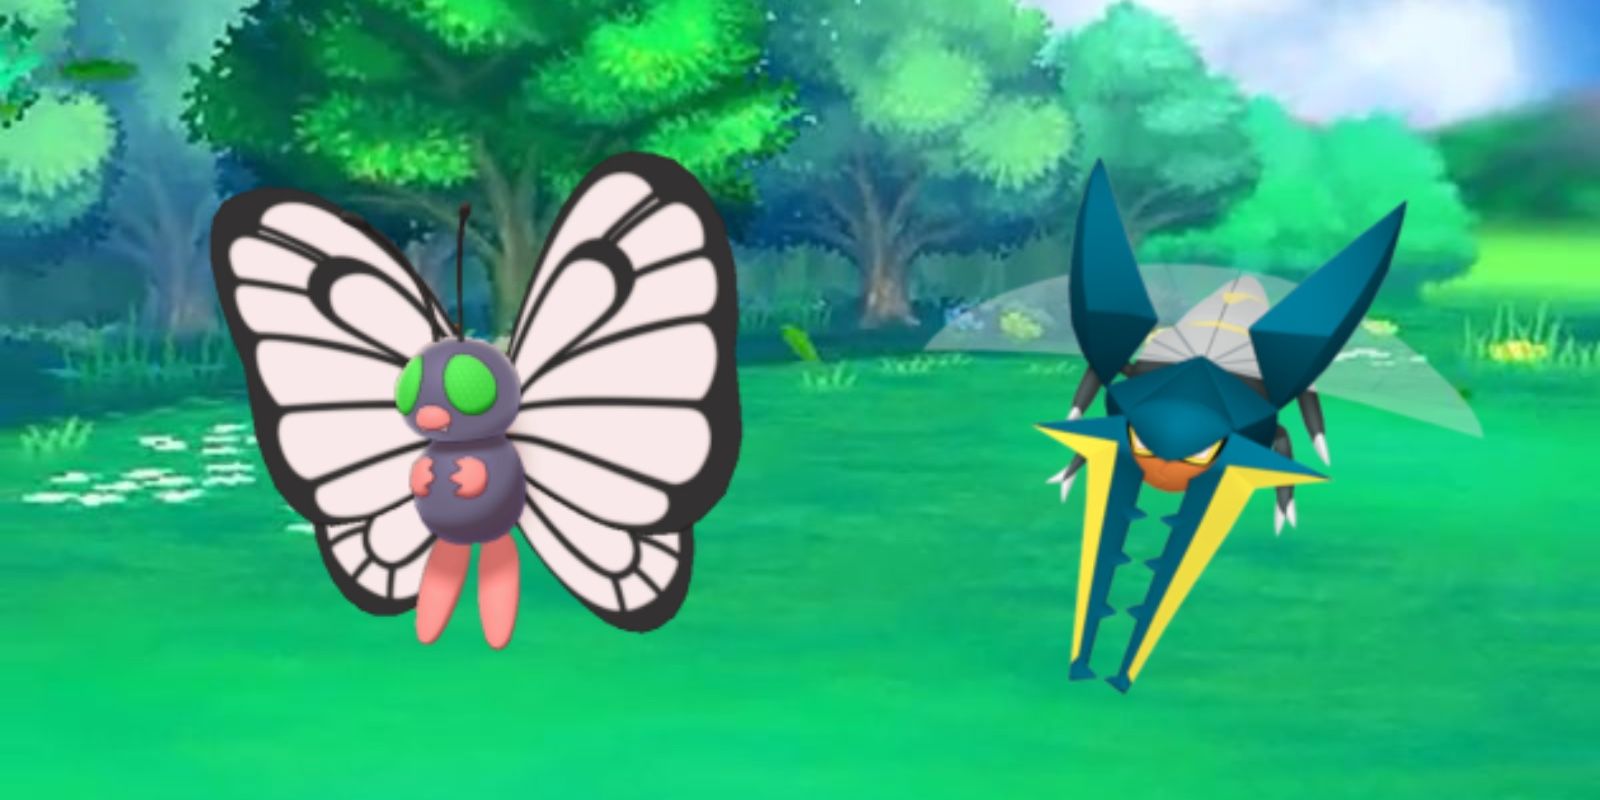 Pokémon GO Bug Out Event Guide